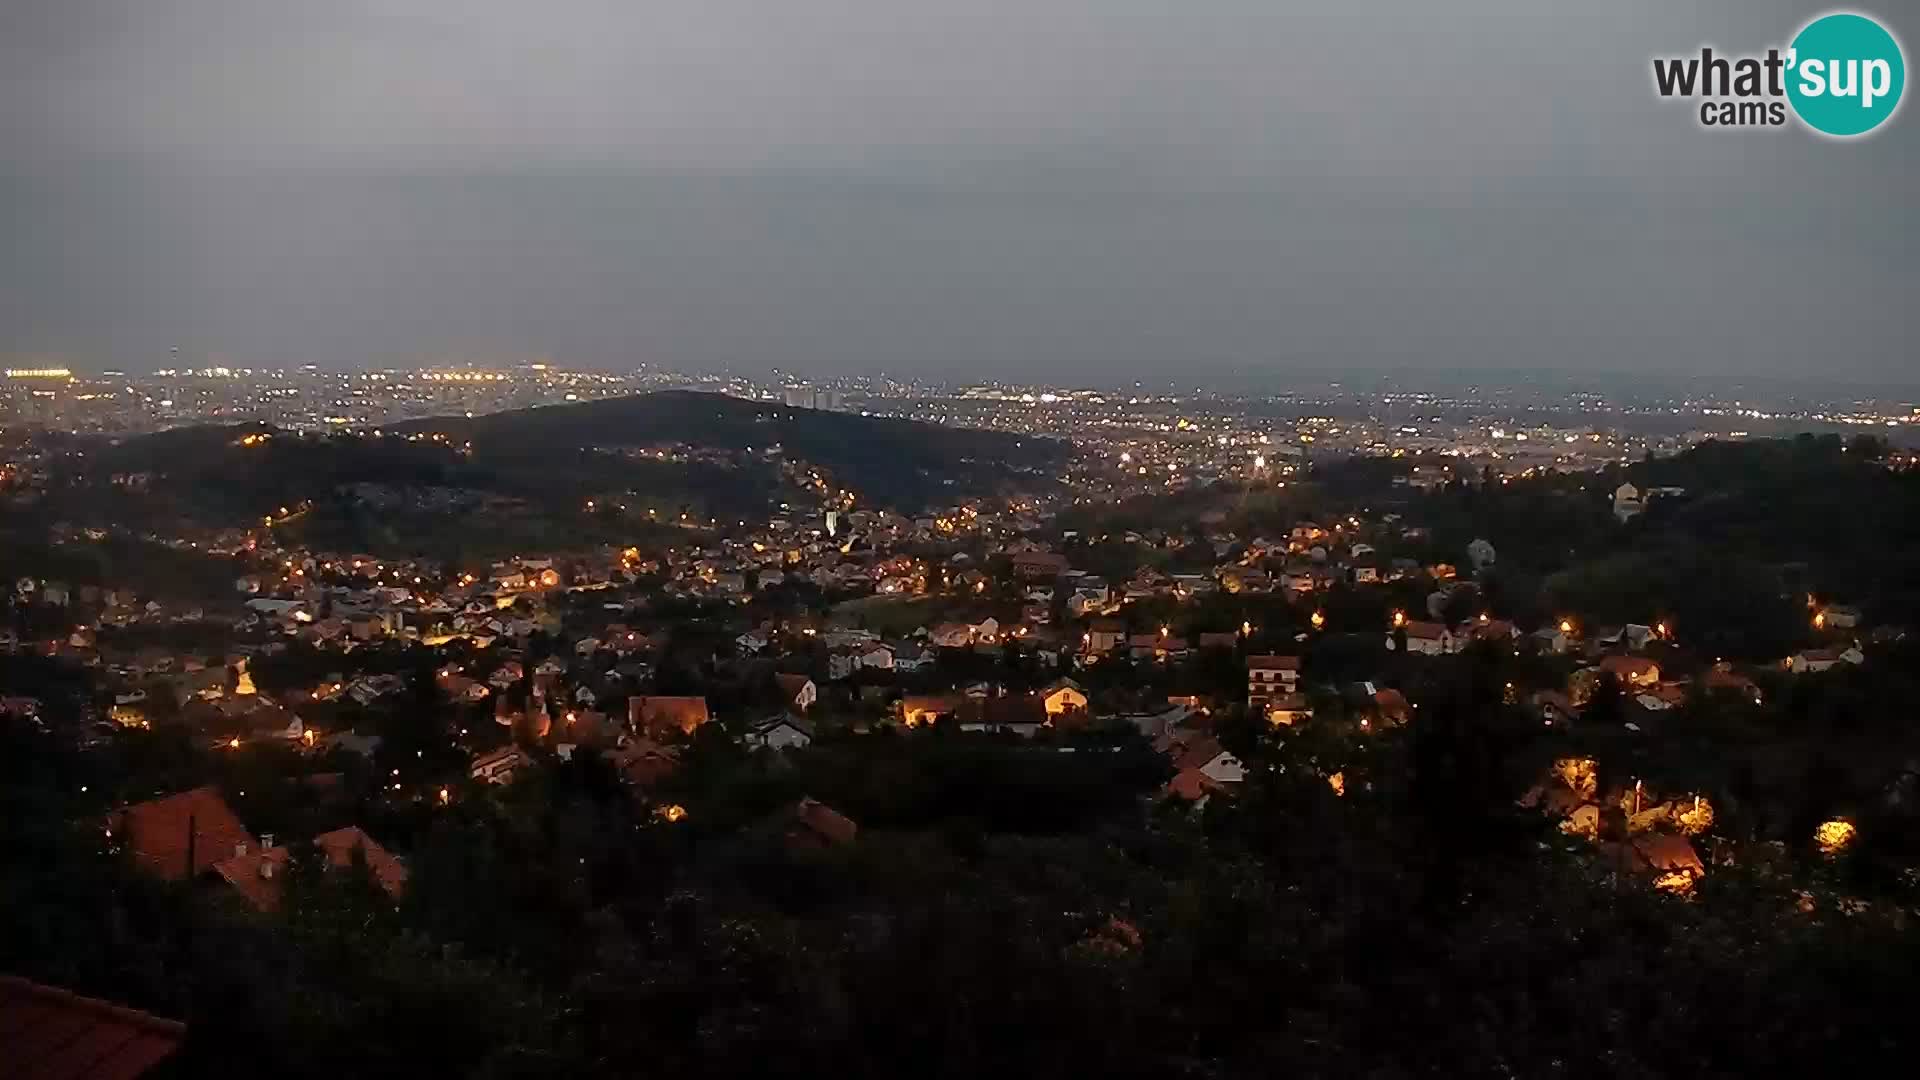 Panoramic view of Zagreb